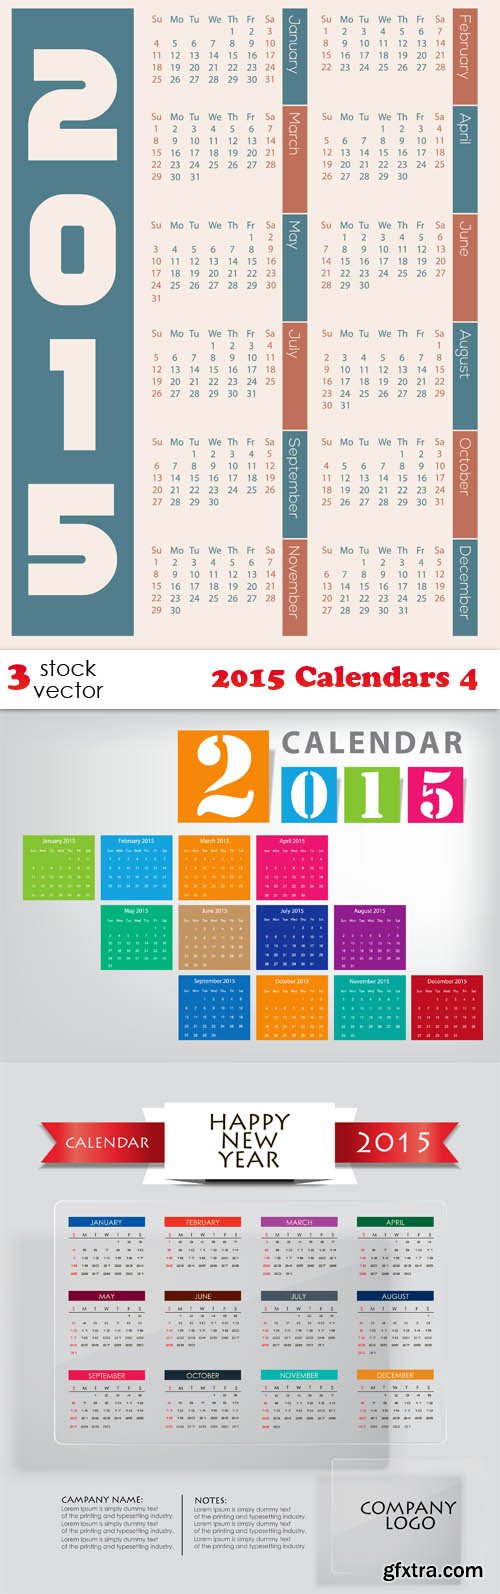 Vectors - 2015 Calendars 4